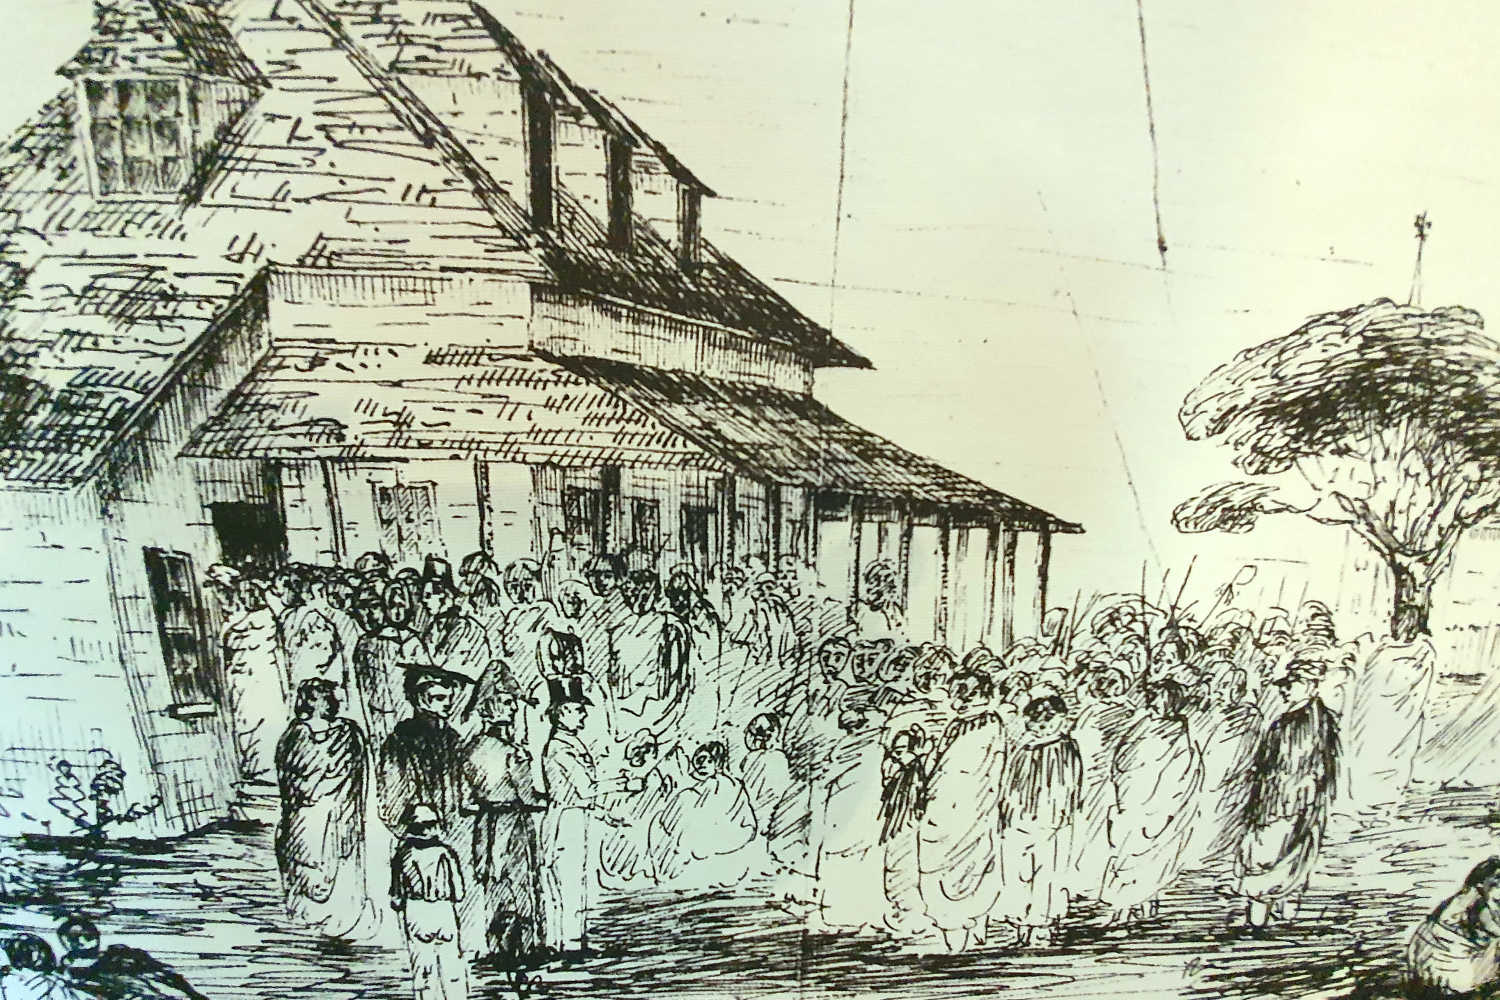 Te Waimate pen _ ink drawing of original settlement